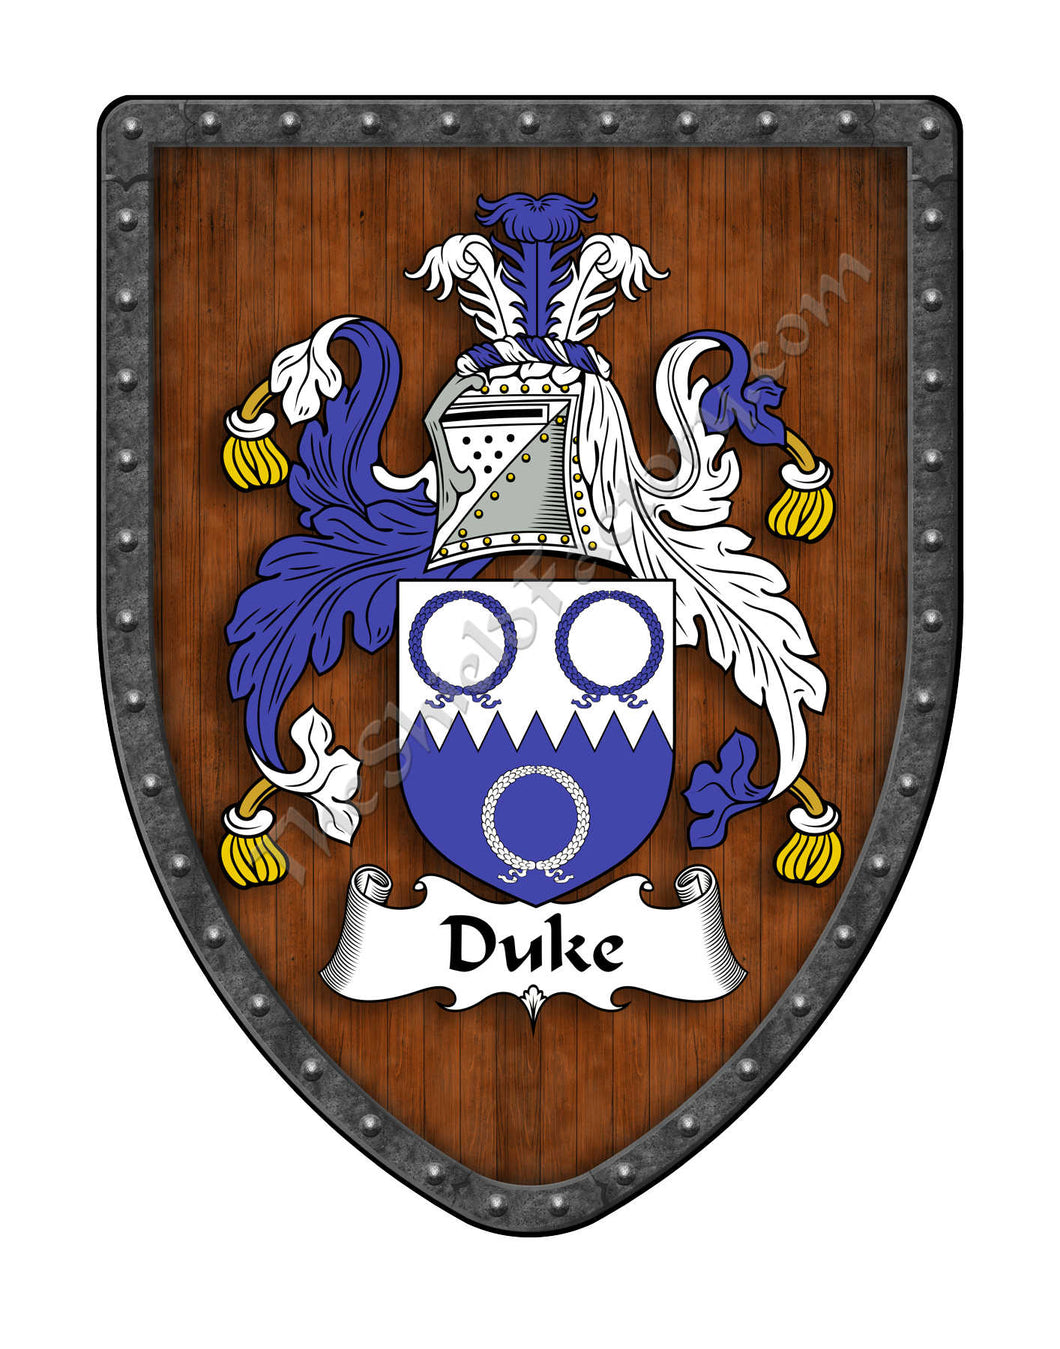 Duke Family Coat of Arms